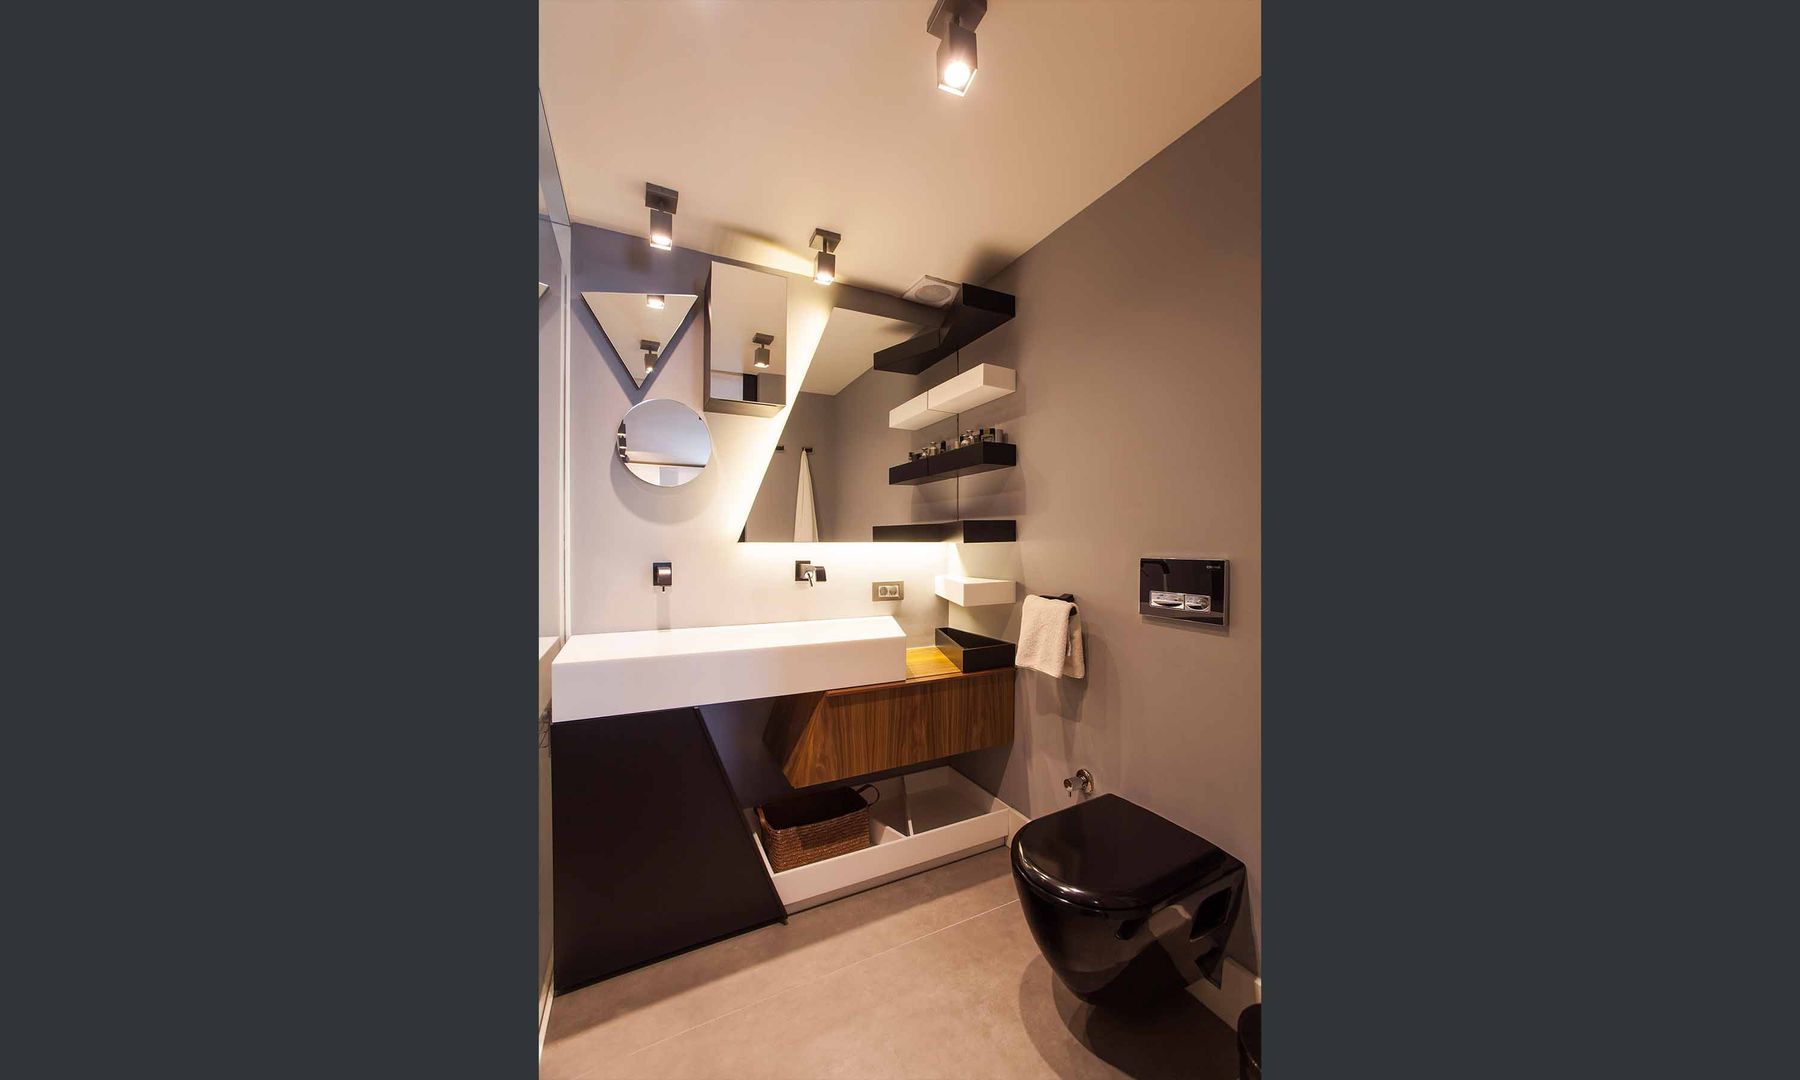 Şekeroğlu Residential, Pebbledesign / Çakıltașları Mimarlık Tasarım Pebbledesign / Çakıltașları Mimarlık Tasarım Modern bathroom